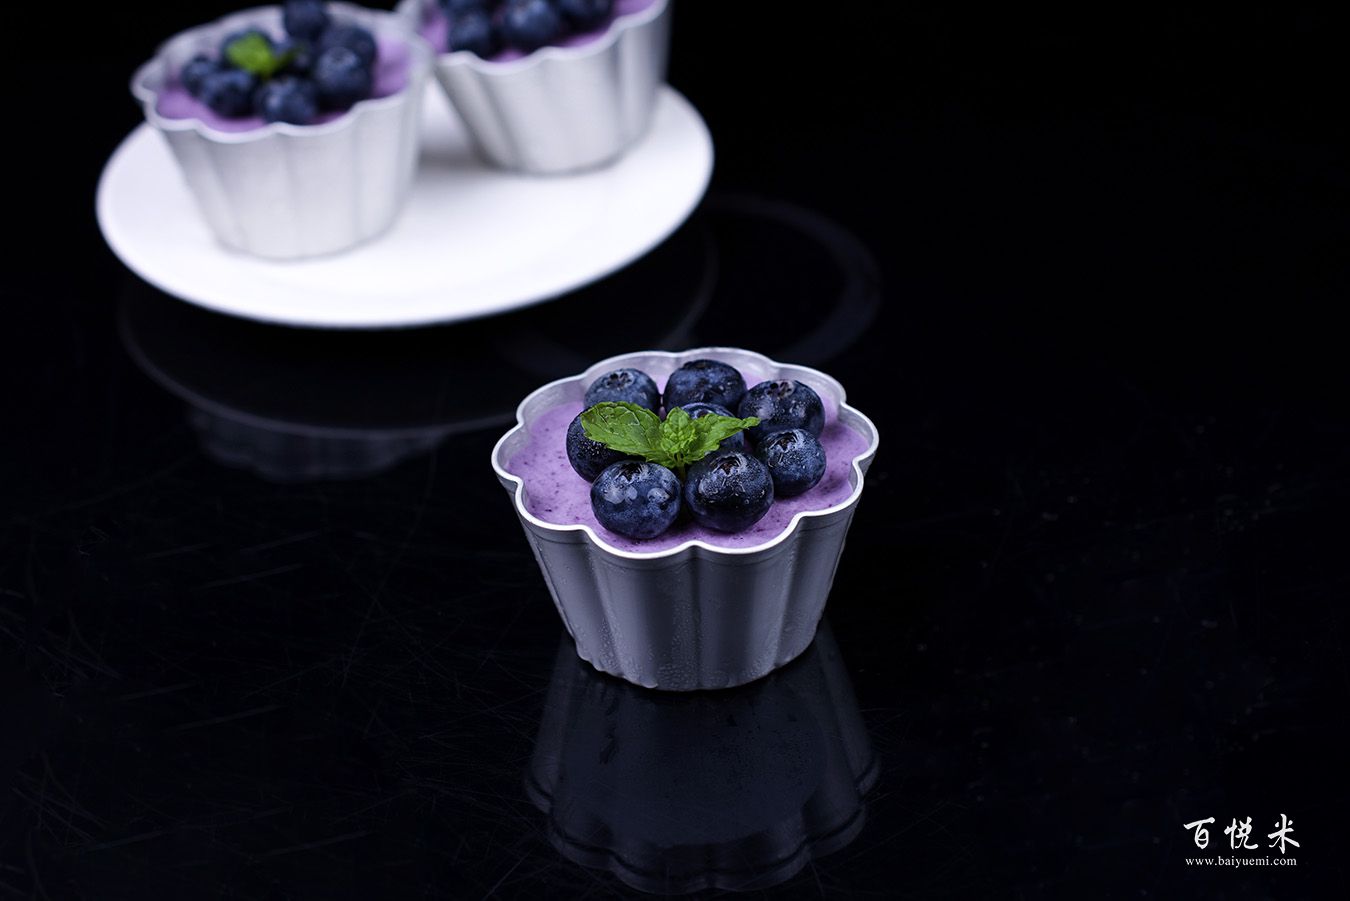 爱厨房的幸福之味: 蓝莓芝士小蛋糕